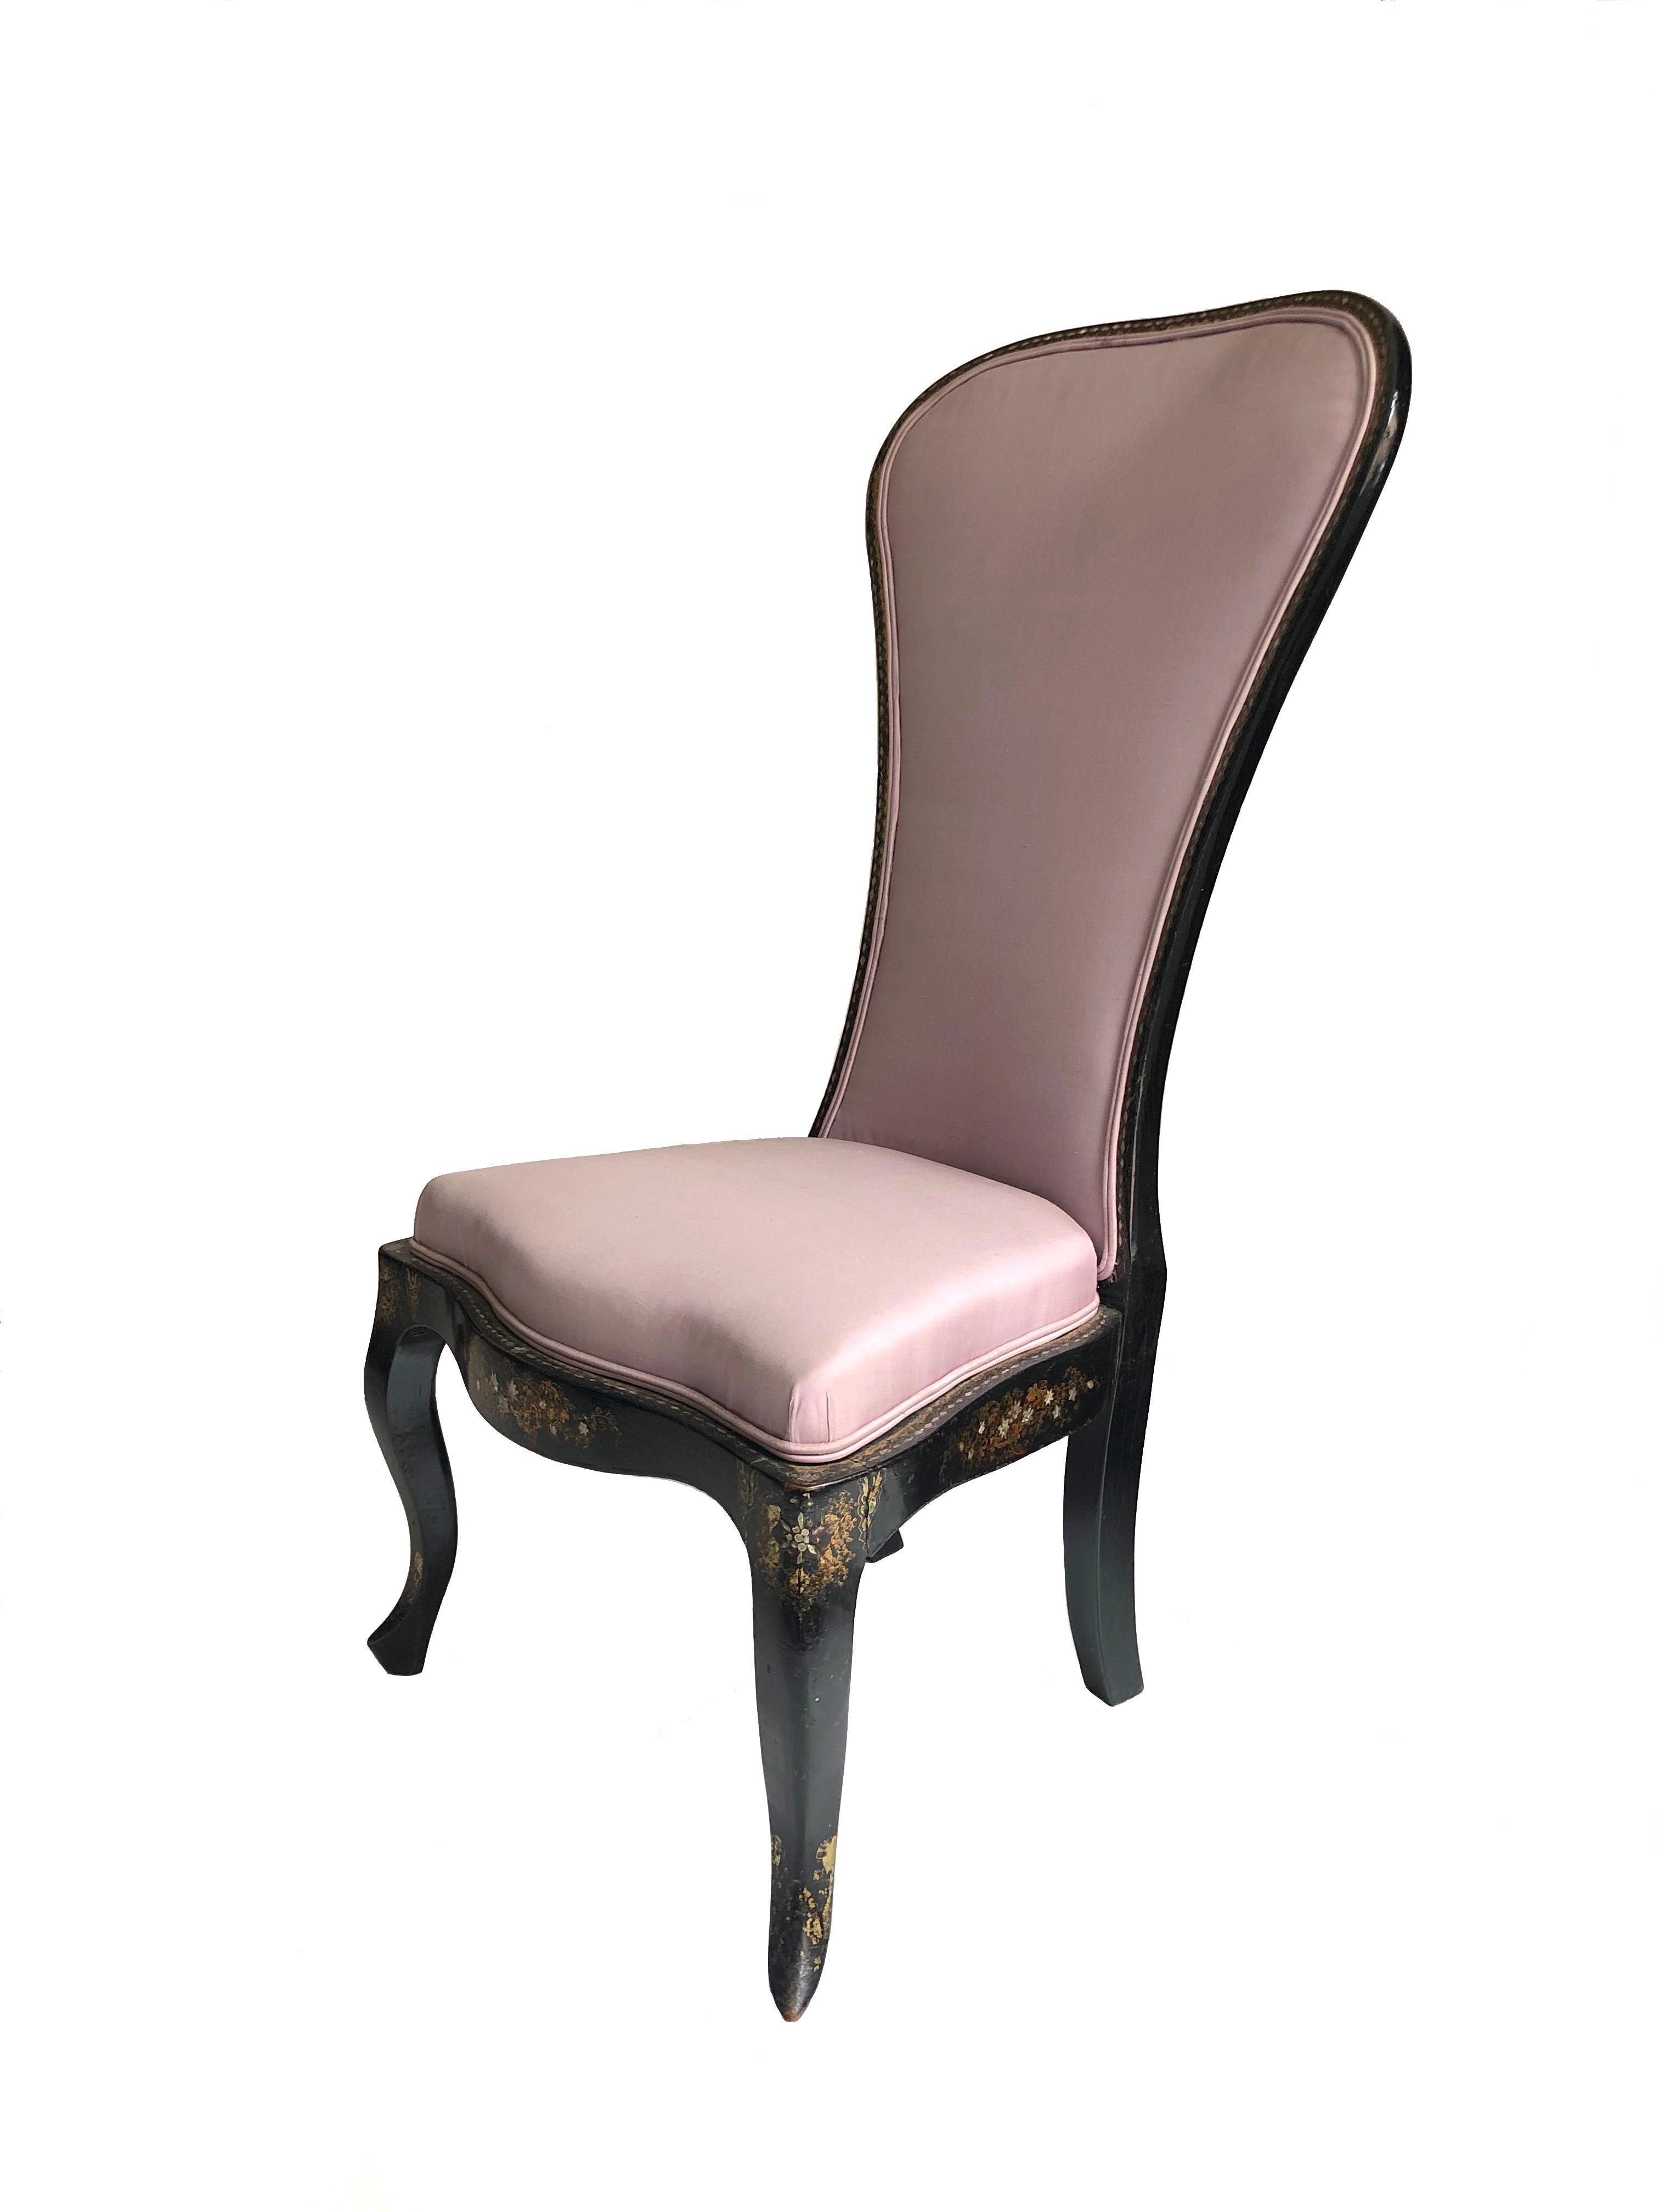 Dieser elegante Salonstuhl wurde mit schwarzem Lack lackiert und mit goldfarbenen Ornamenten verziert.
Die Höhe des Sitzes beträgt 40 cm.